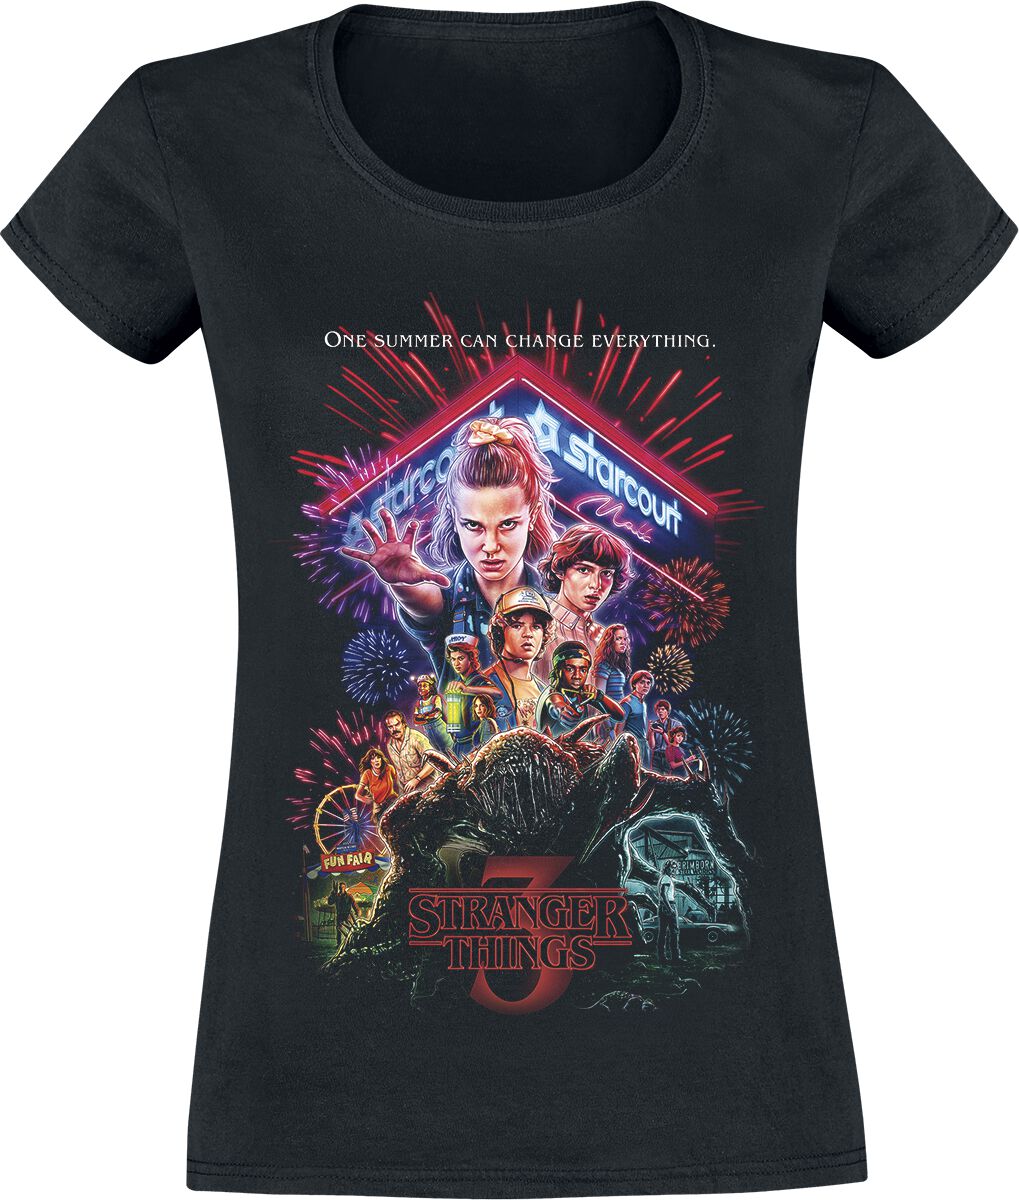 Stranger Things T-Shirt - Staffel 3 Cover - XS bis XXL - für Damen - Größe M - schwarz  - EMP exklusives Merchandise!